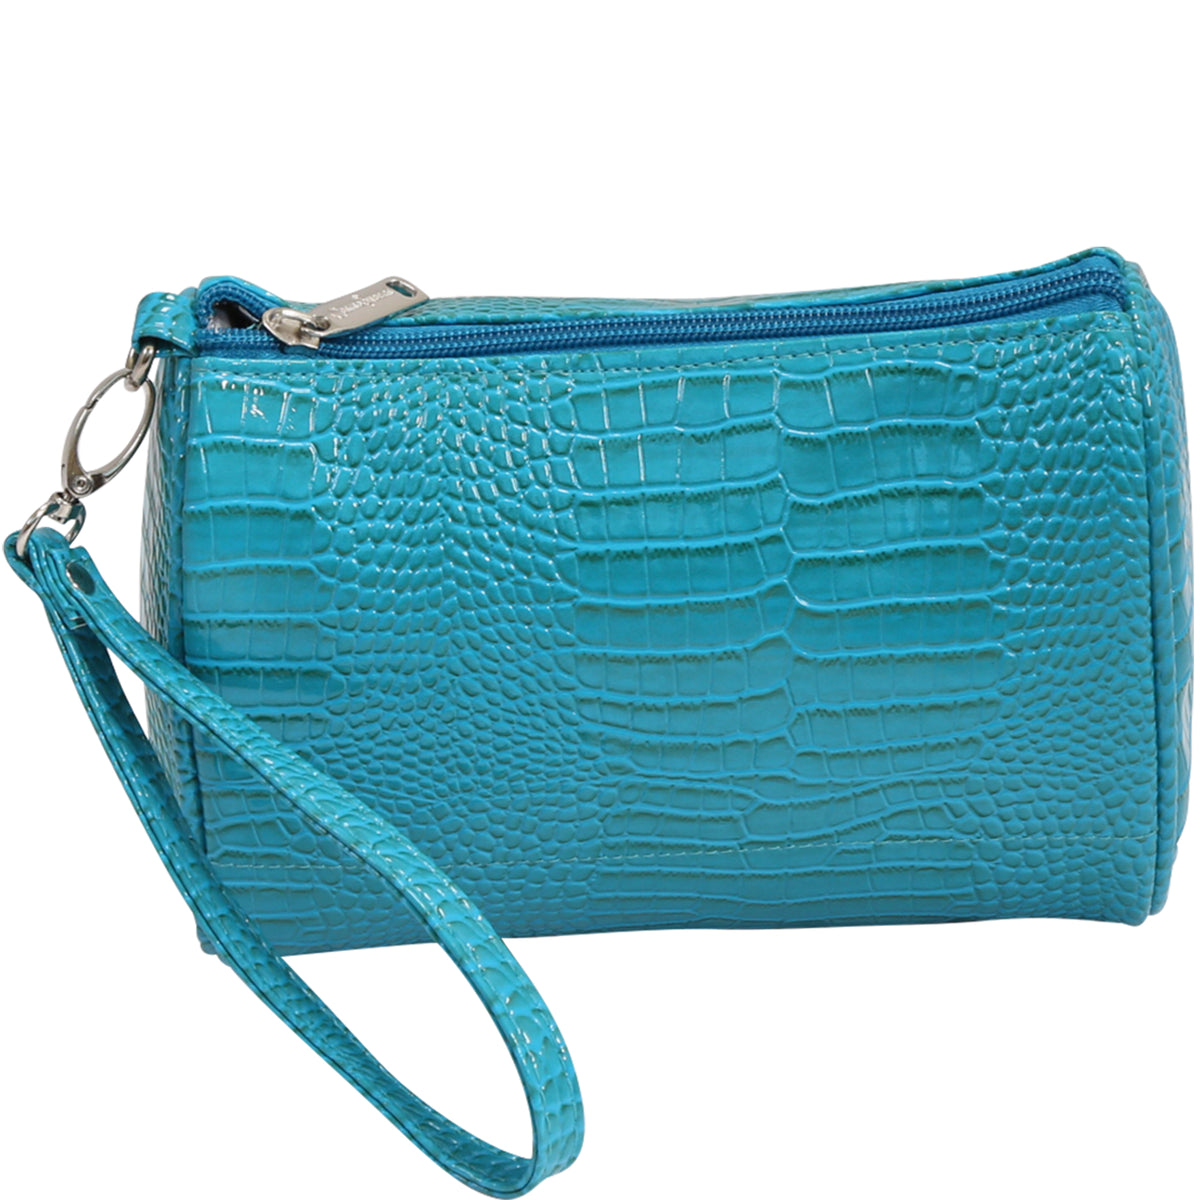 Cosmetic Bag Shirley Temple Design - Primeware Inc.